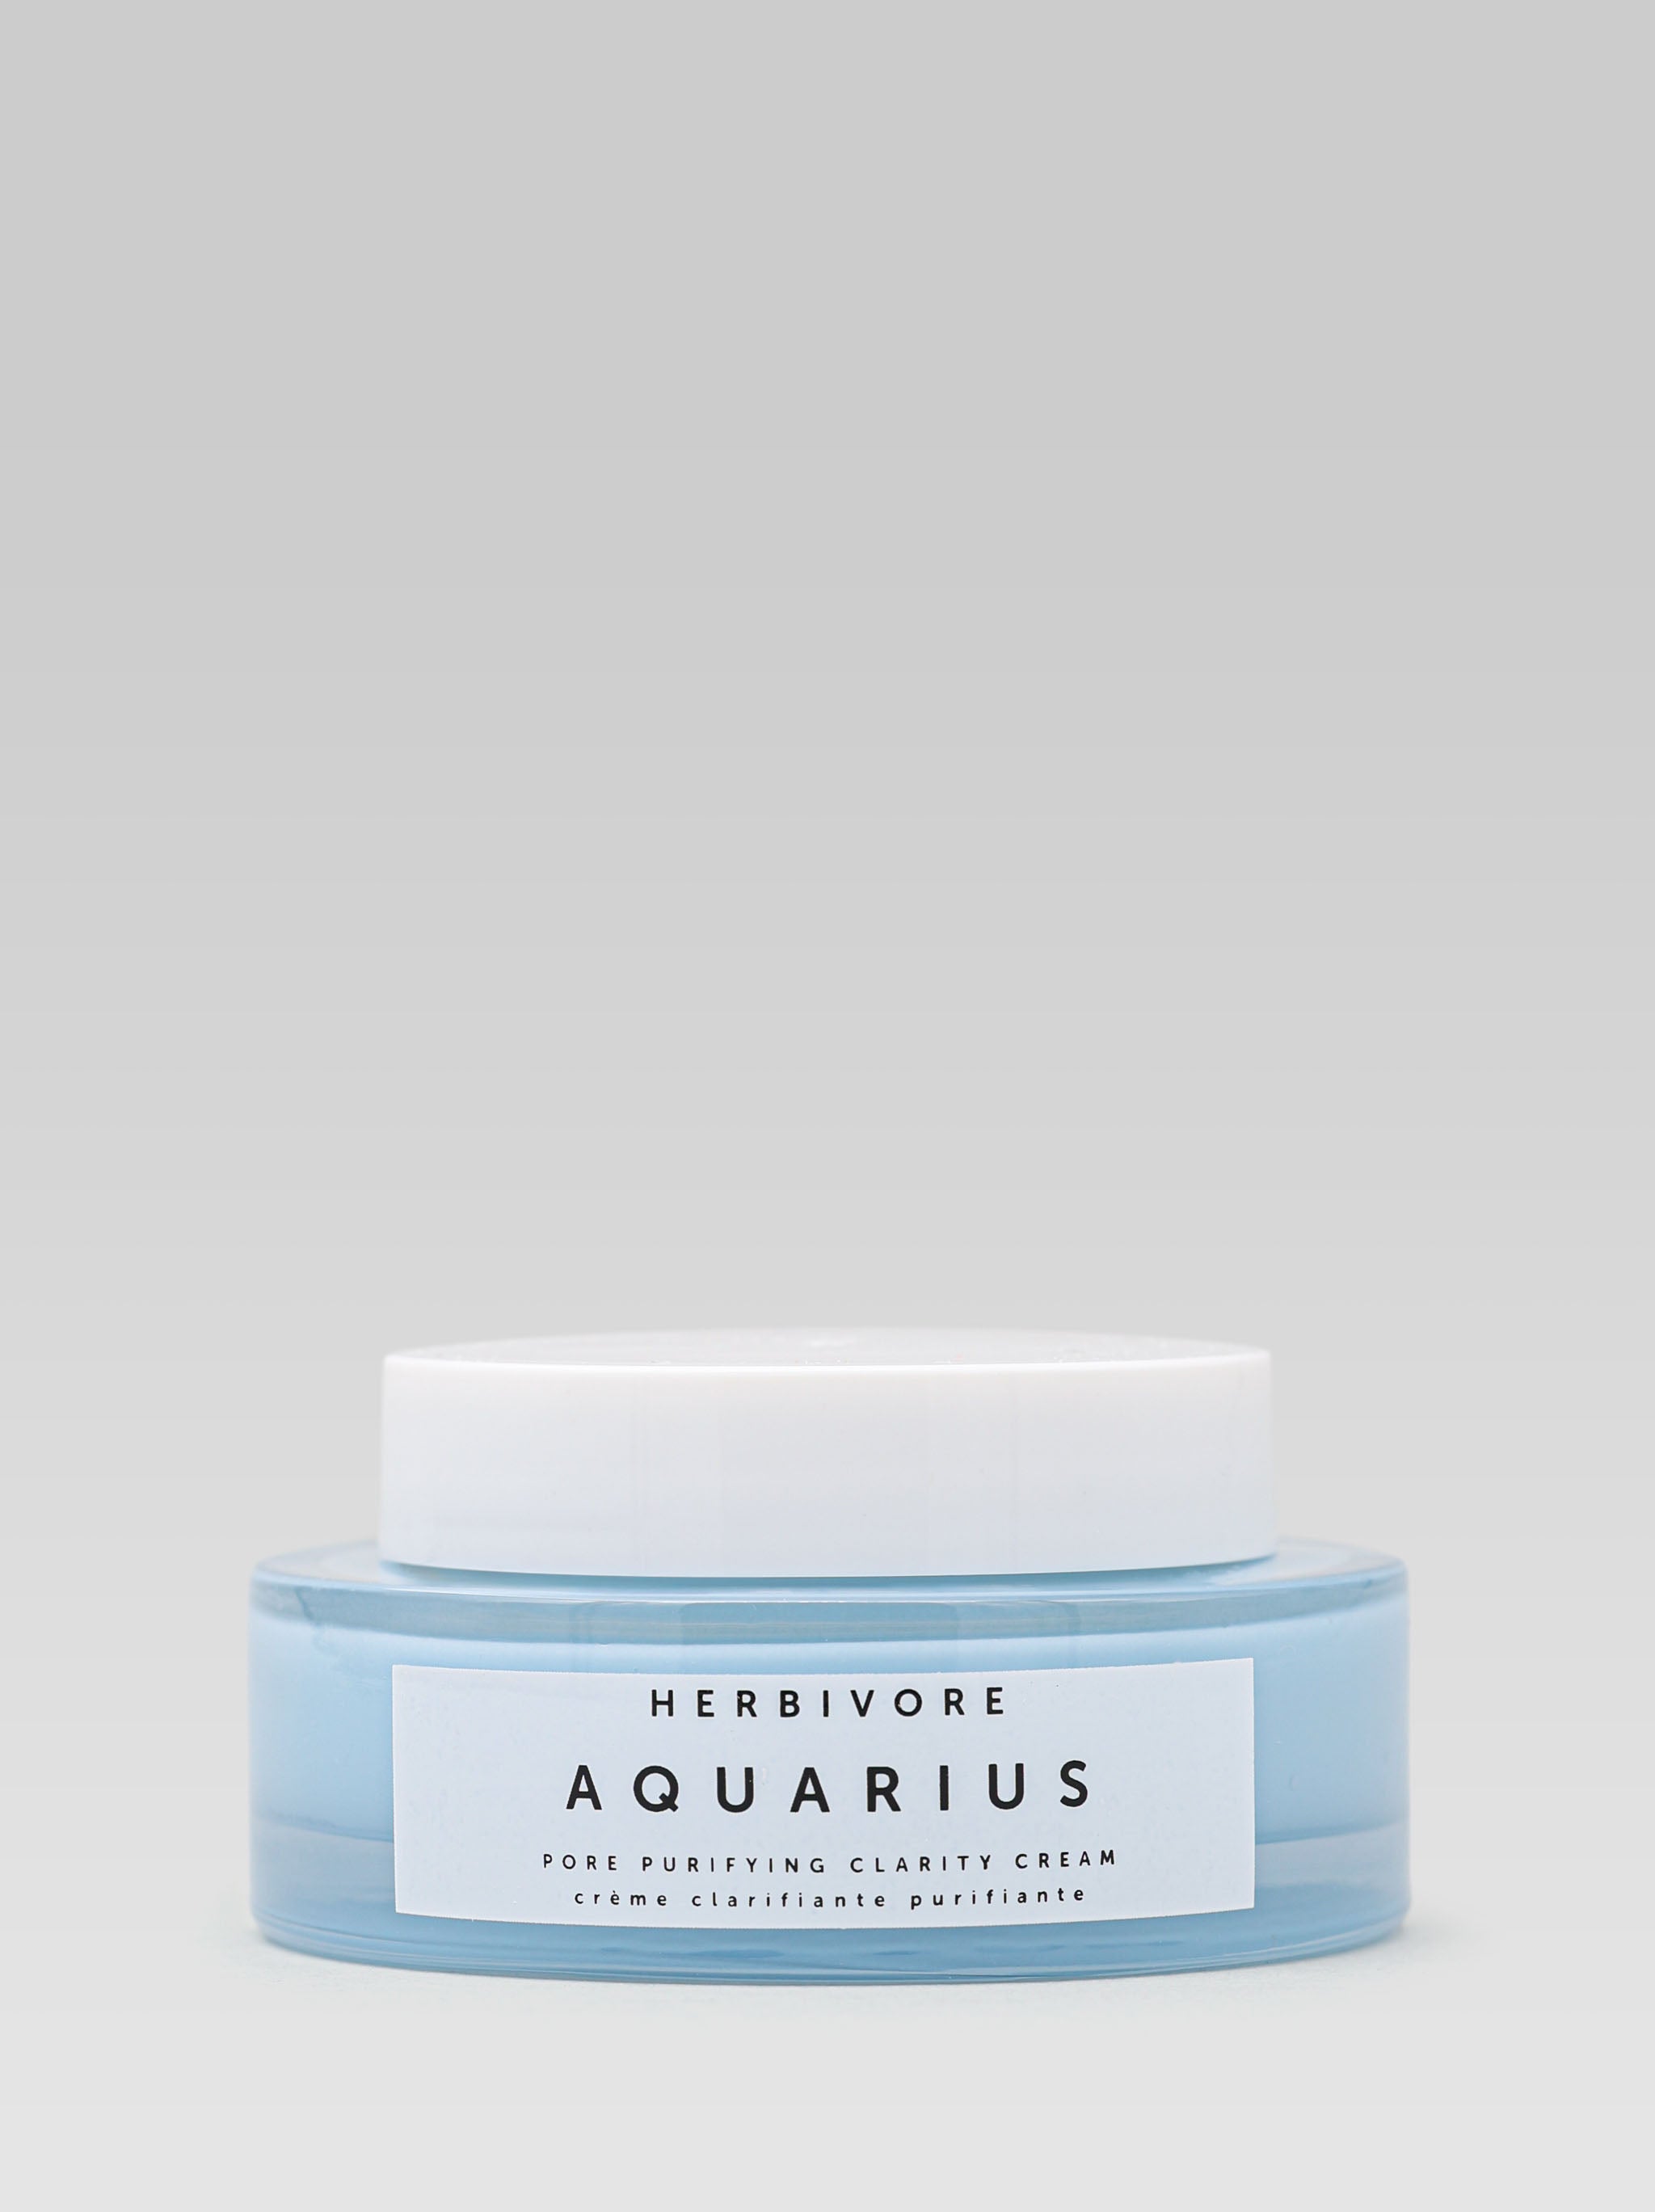 HERBIVORE BOTANICALS Aquarius Pore Purifying Clarity Cream Product Shot 